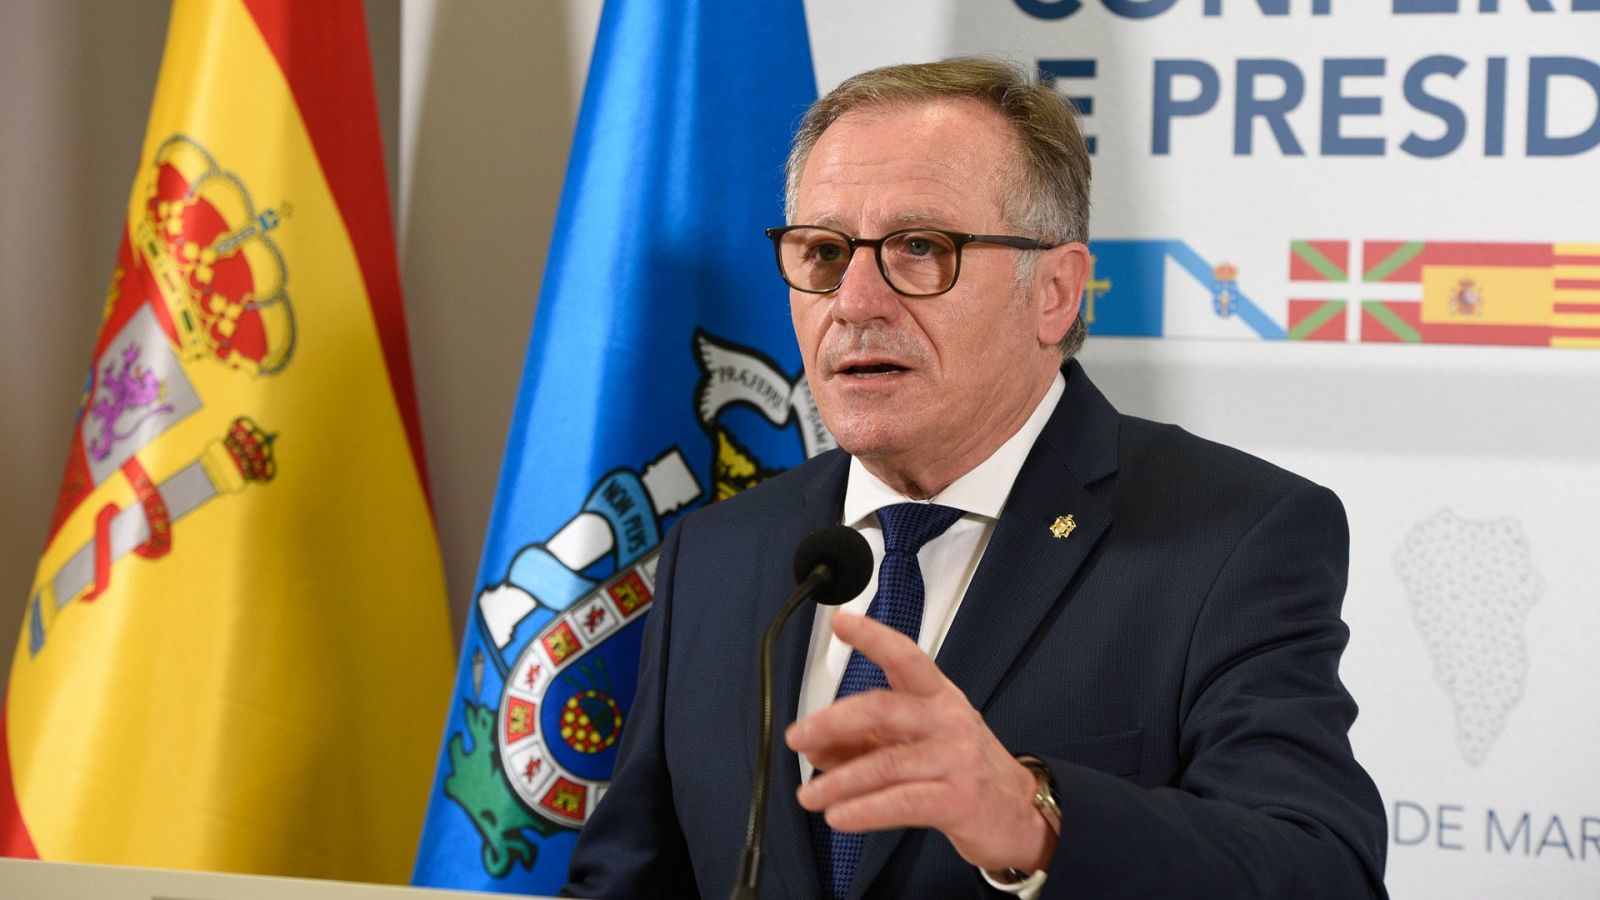 El presidente de Melilla: "Hay muchas ganas de que se vuelva a abrir la frontera"